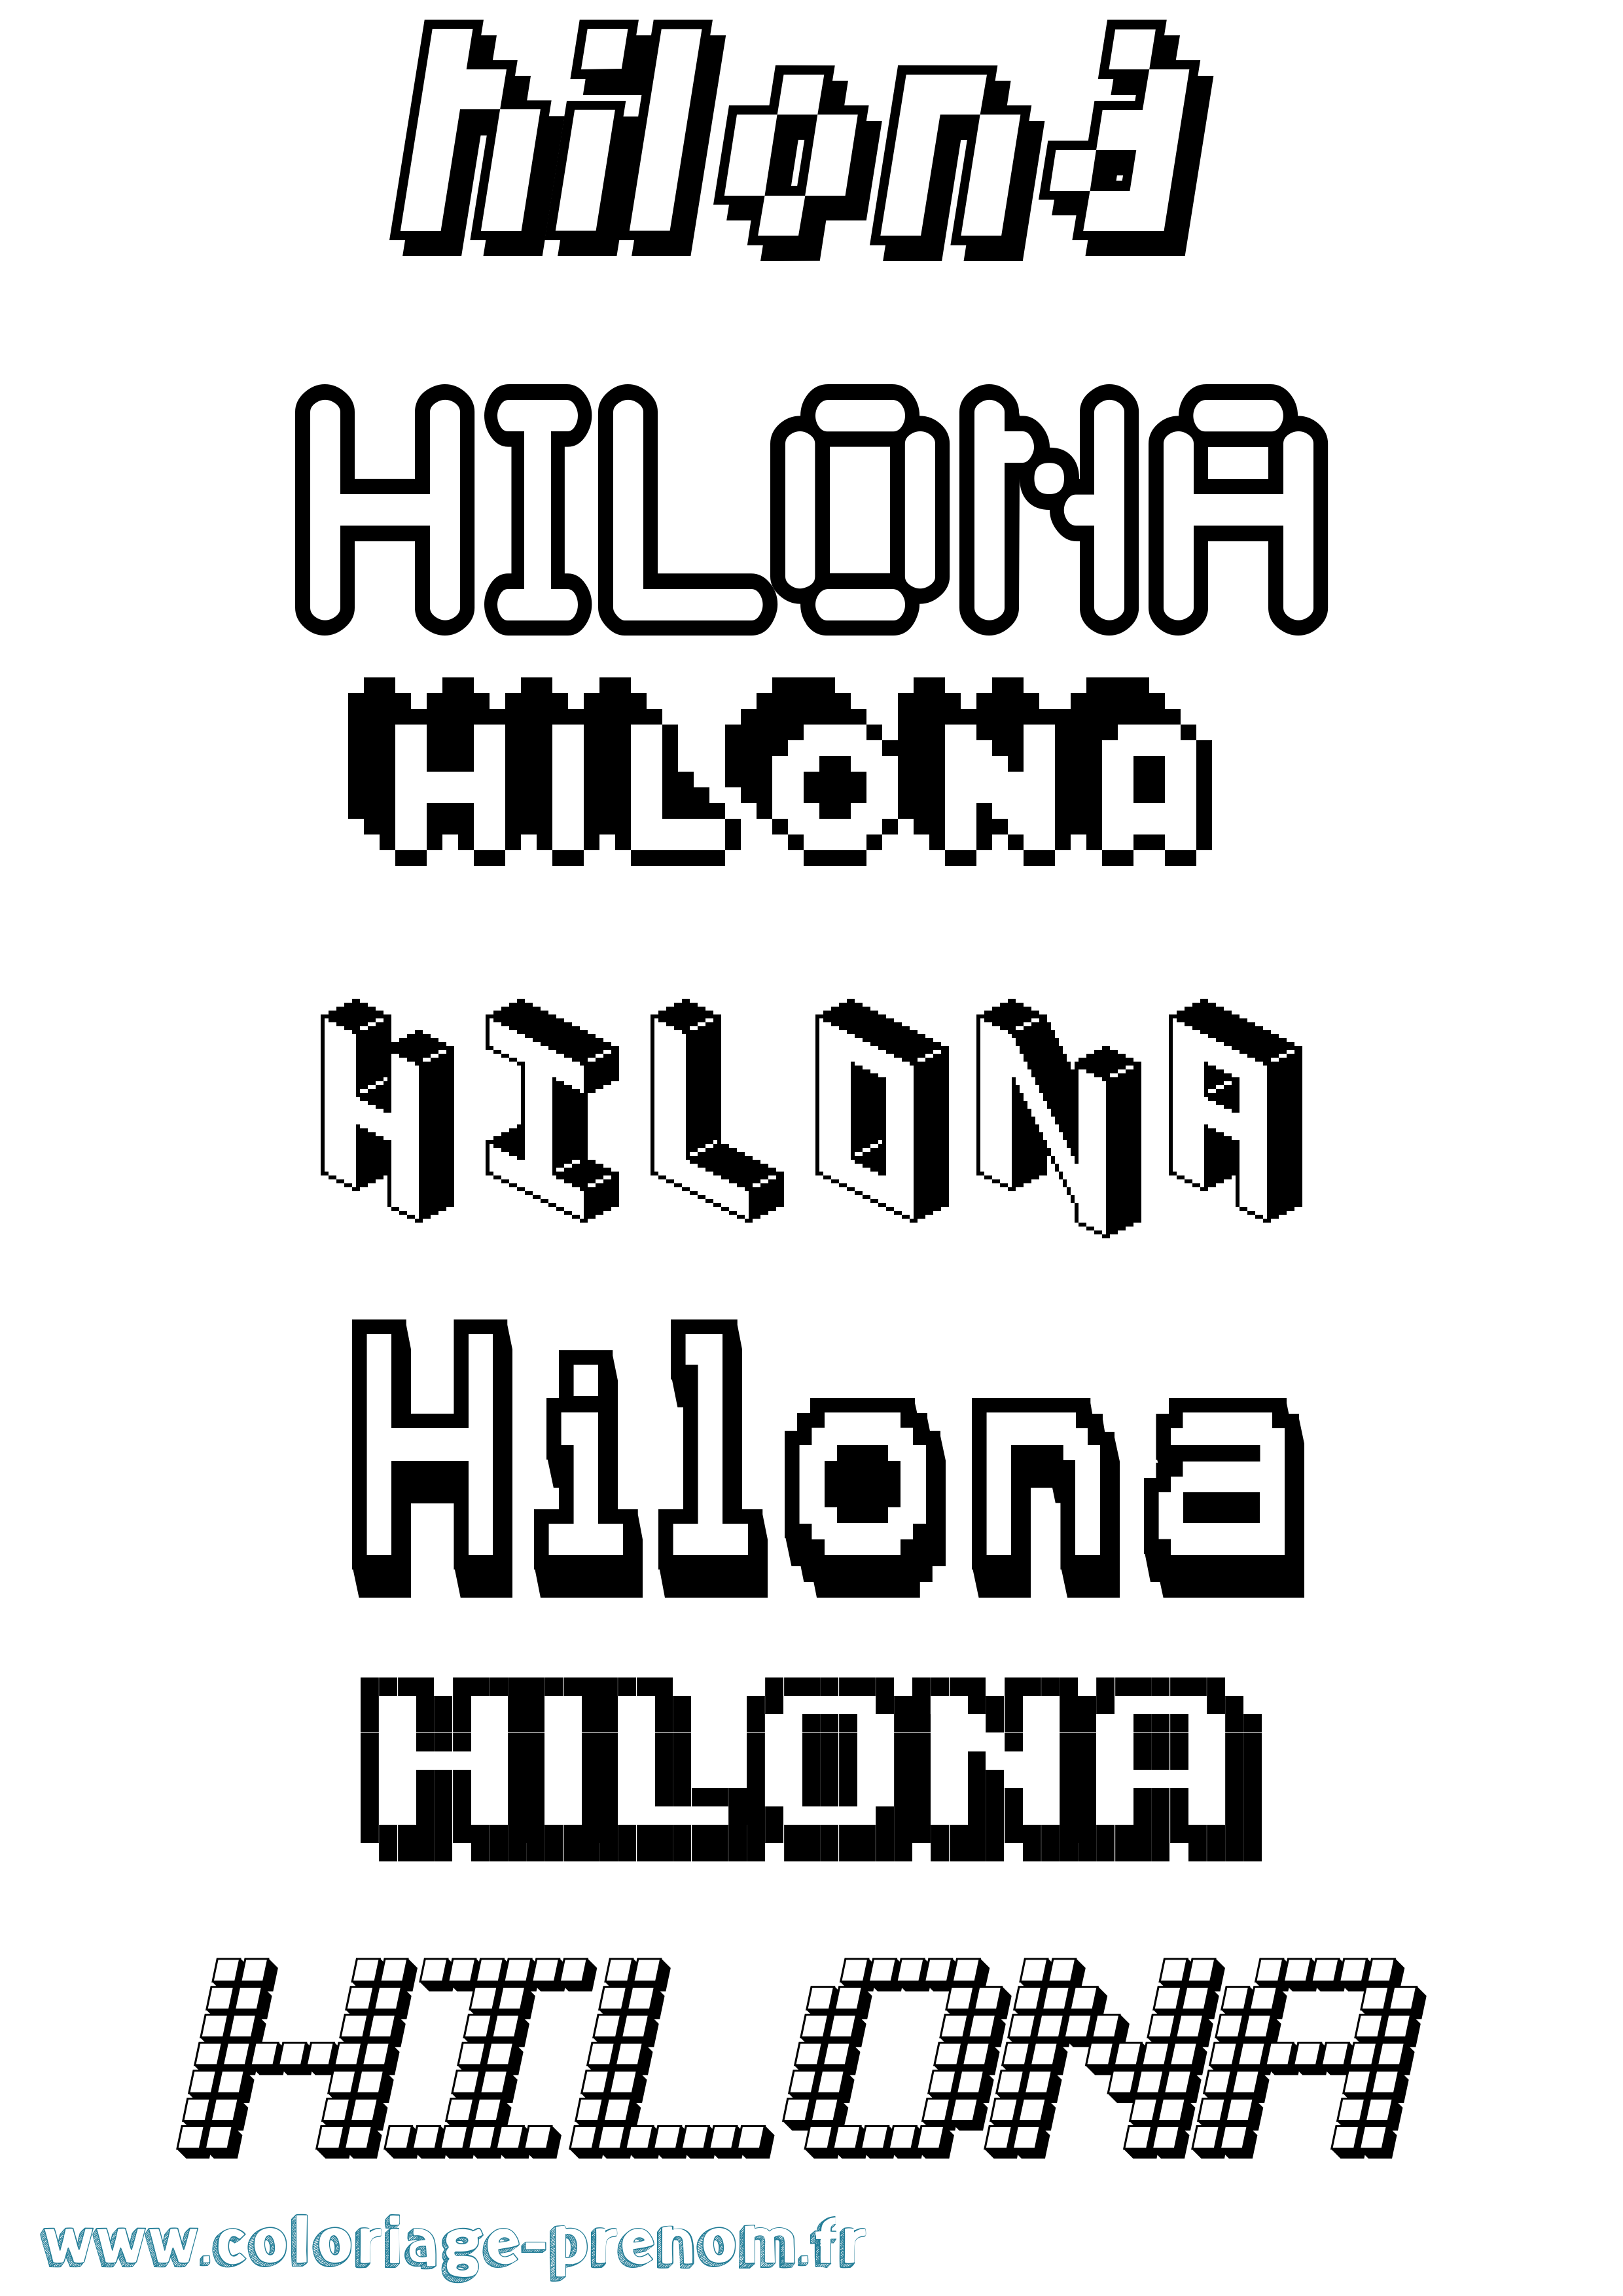 Coloriage prénom Hilona Pixel